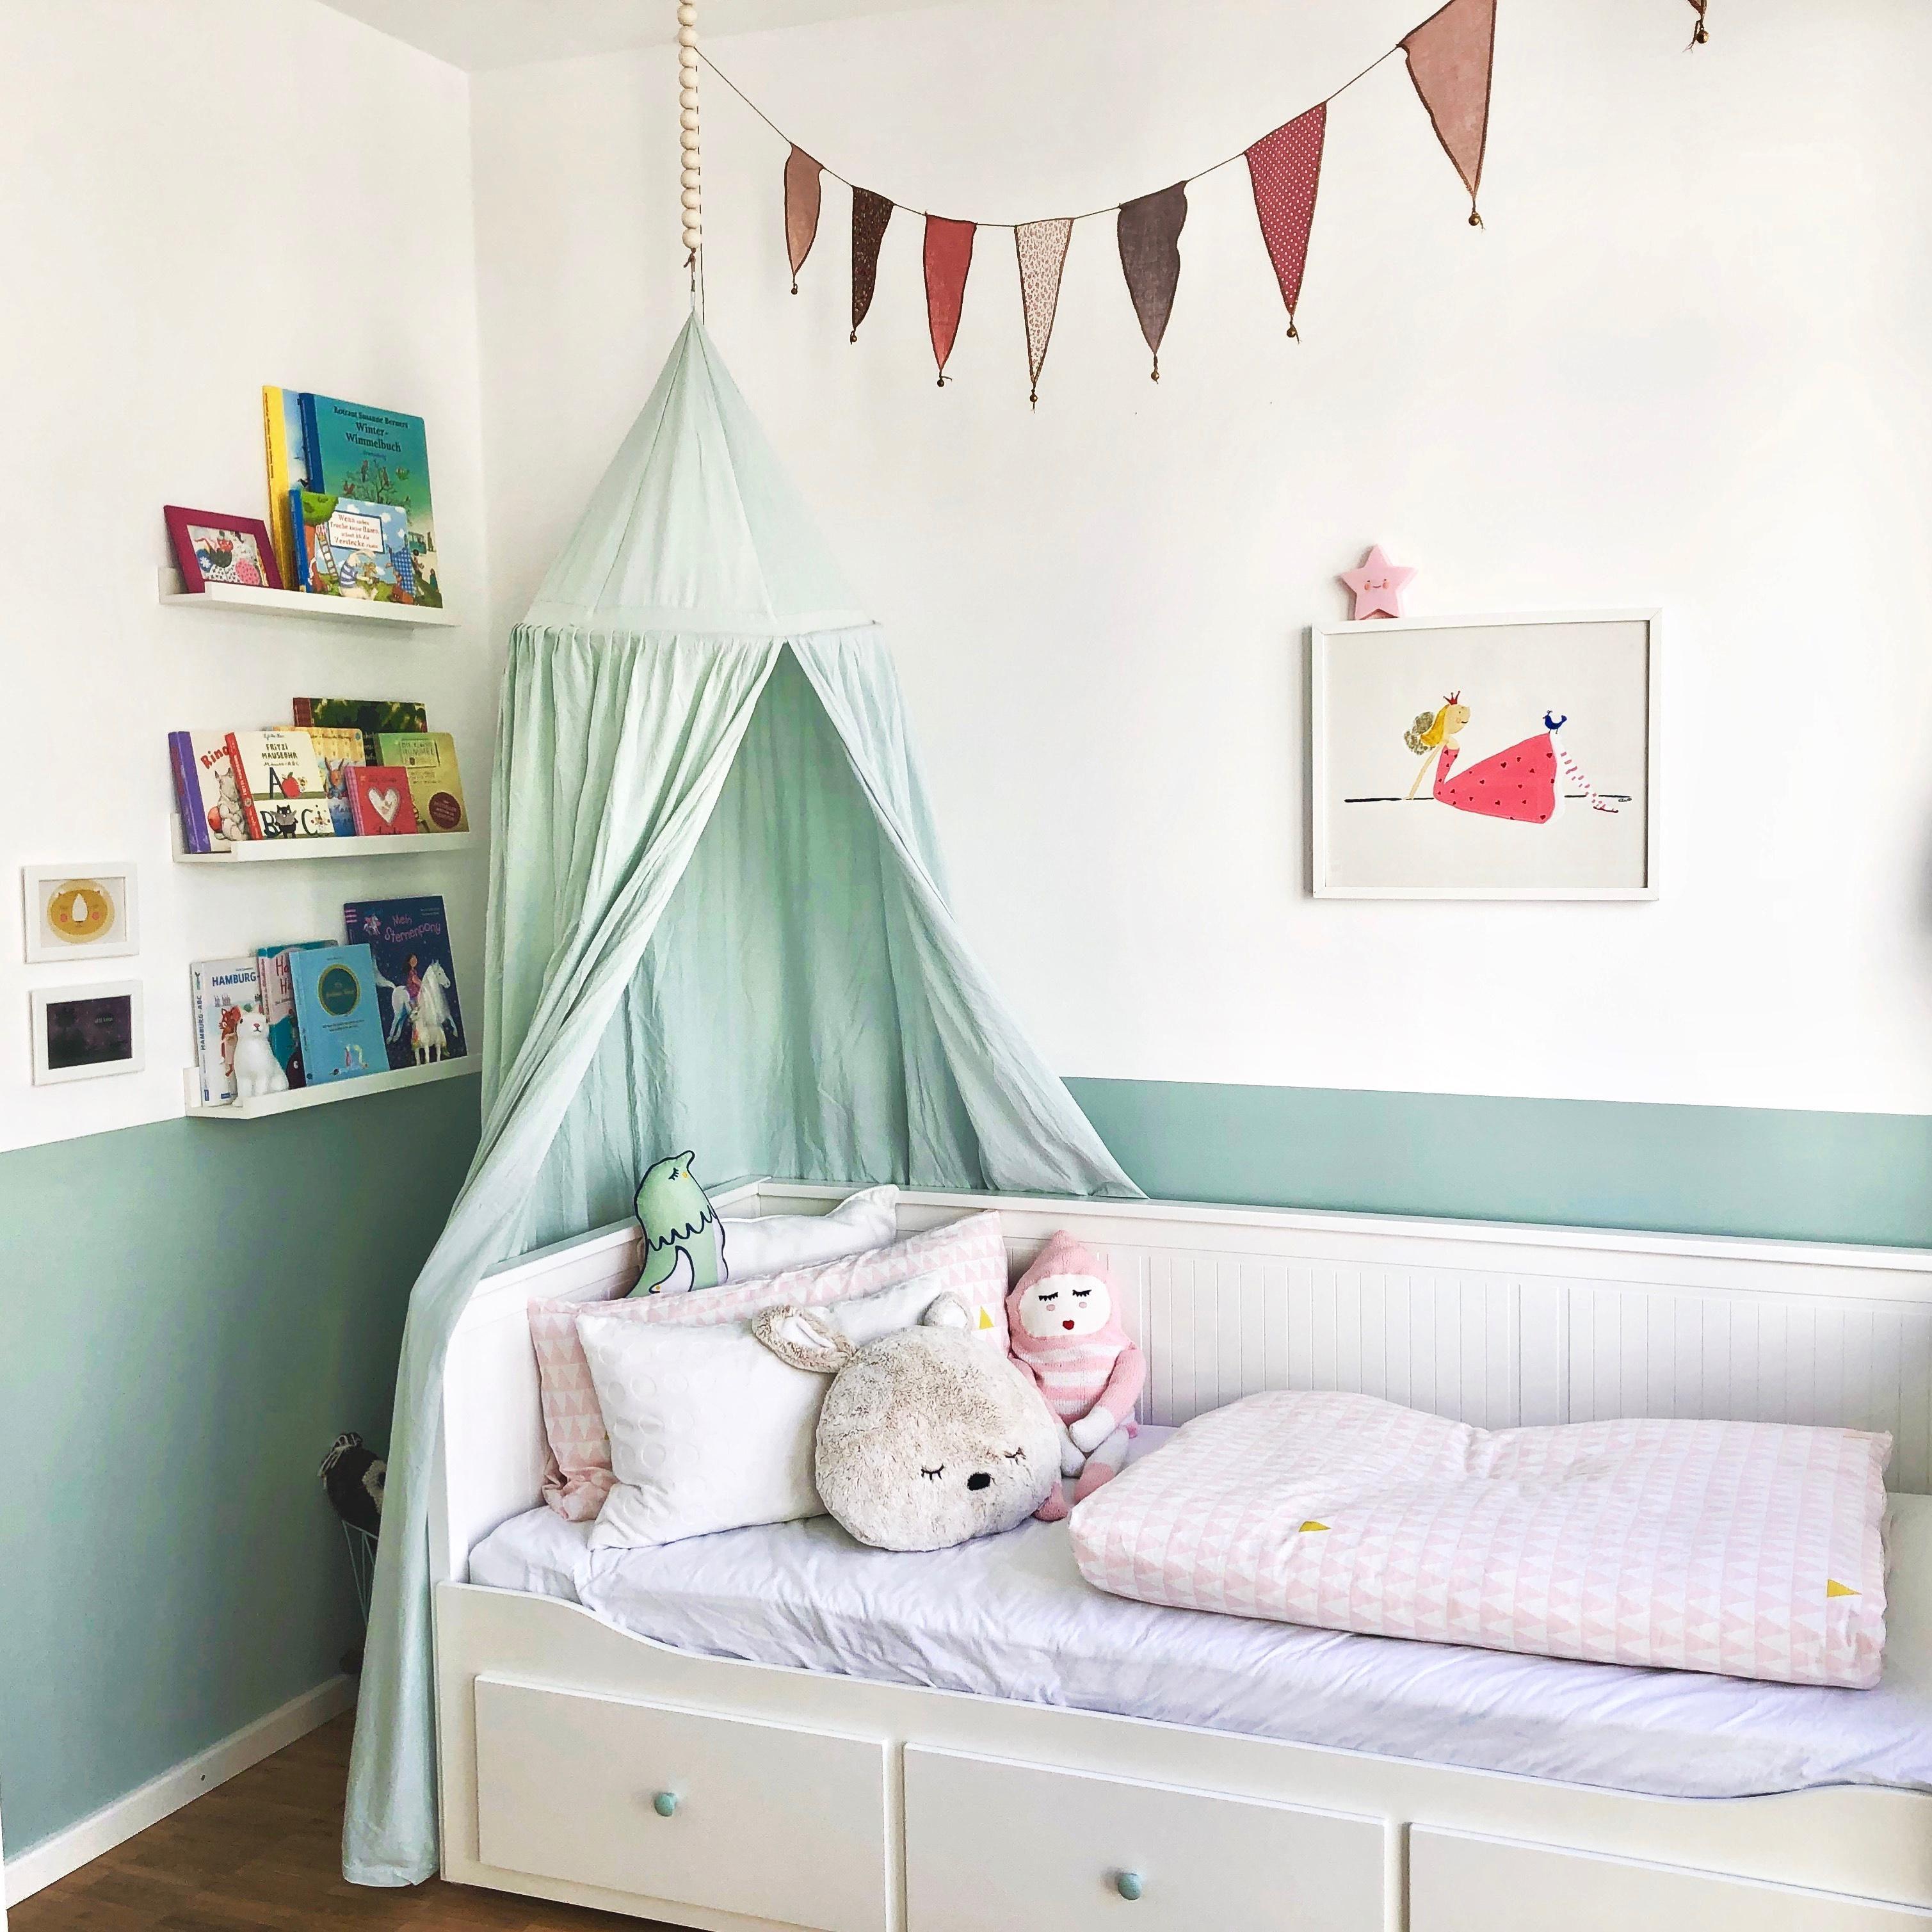 Kinderzimmer Update #Mädchenzimmer #Kinderzimmer #mintgrün #Baldachin #ikea #Kinderzimmerdeko #couchliebt #hygge